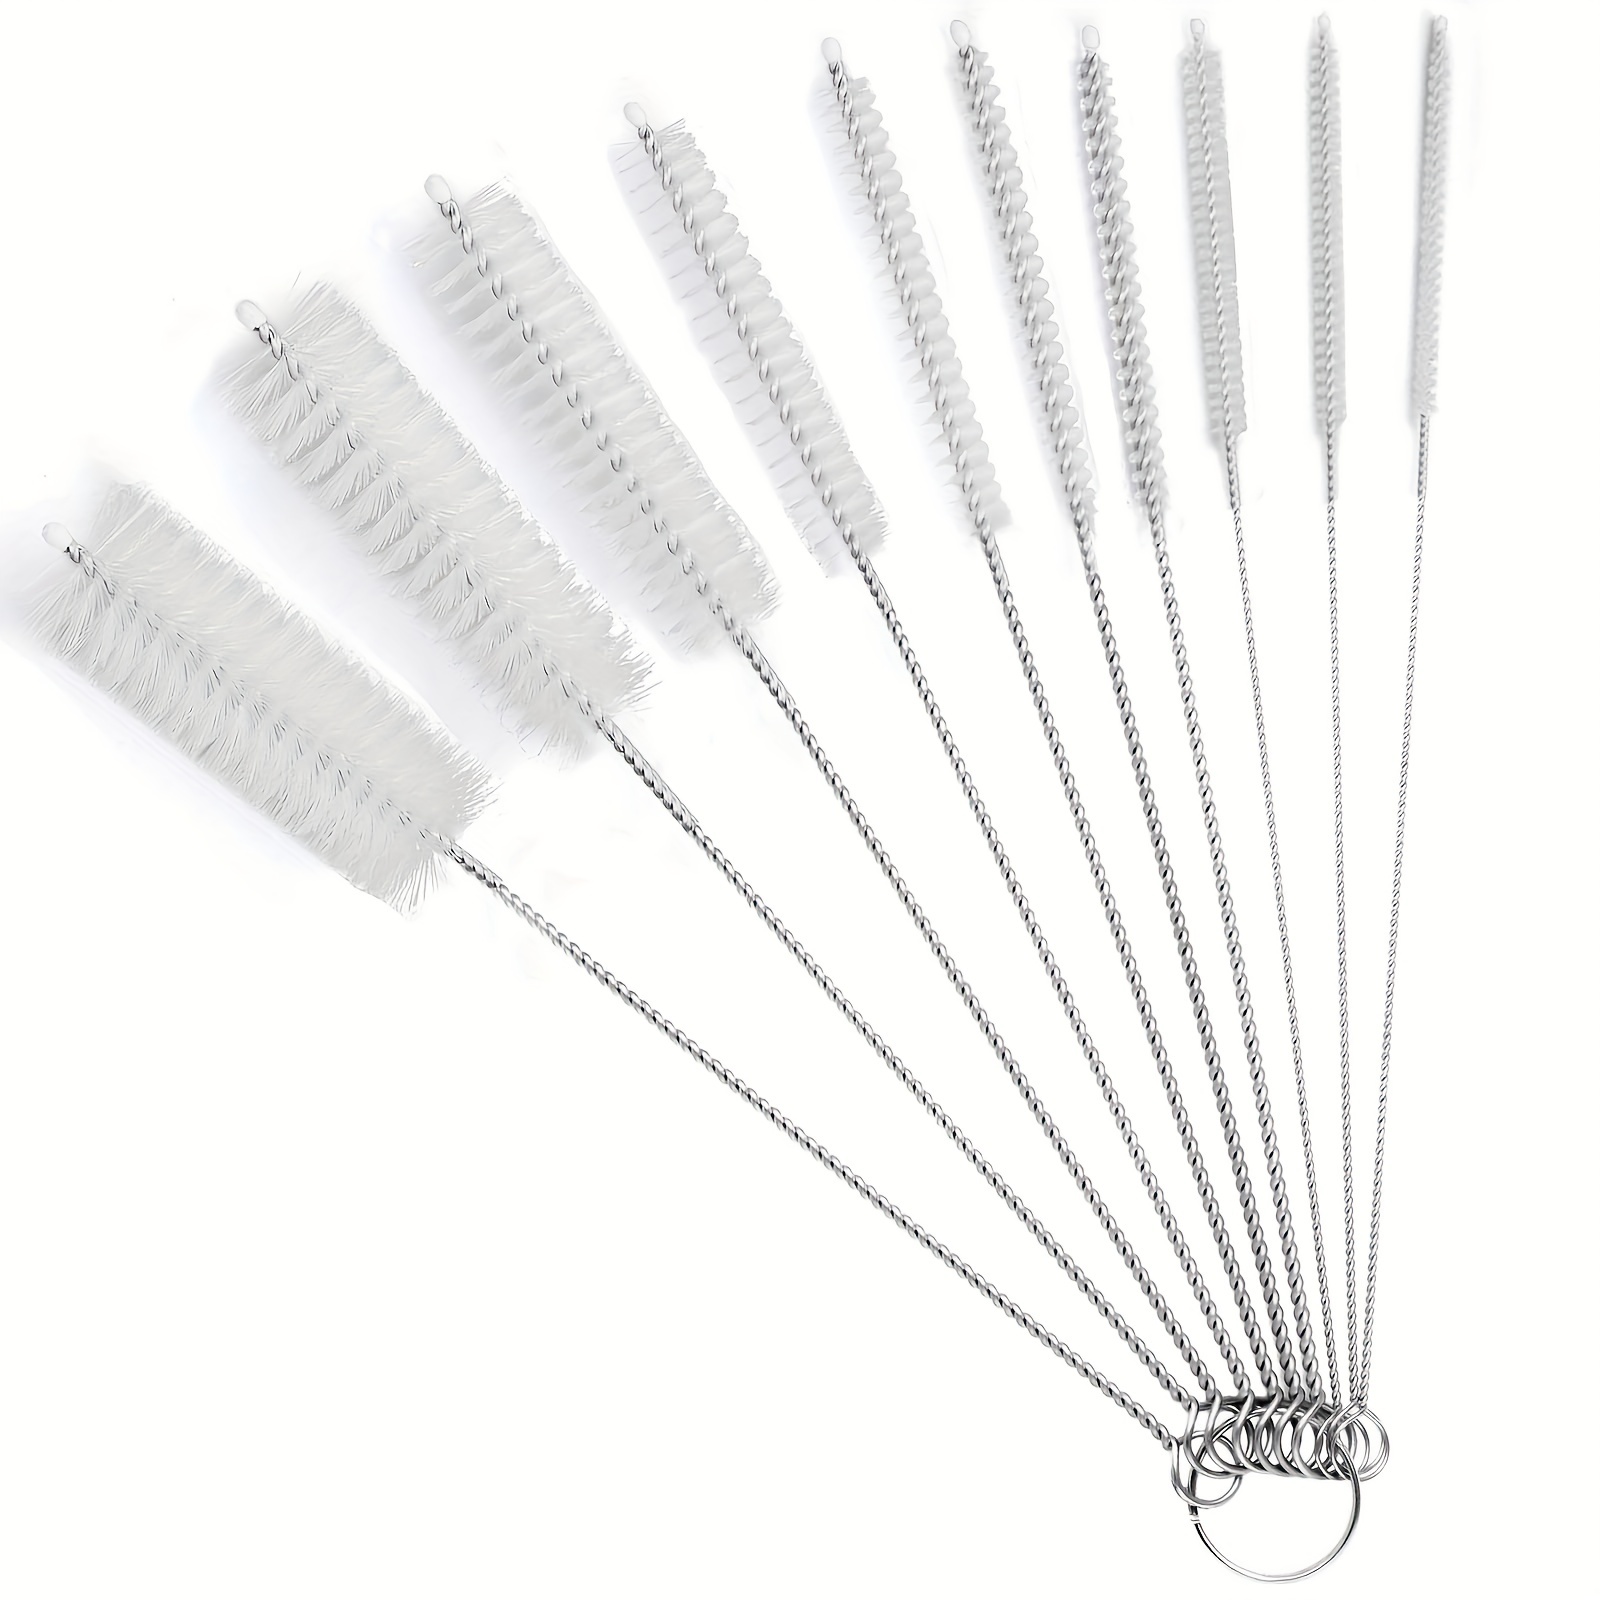 Straw Brush Nylon Pipe Tube Cleaner Stainless Steel Straws - Temu